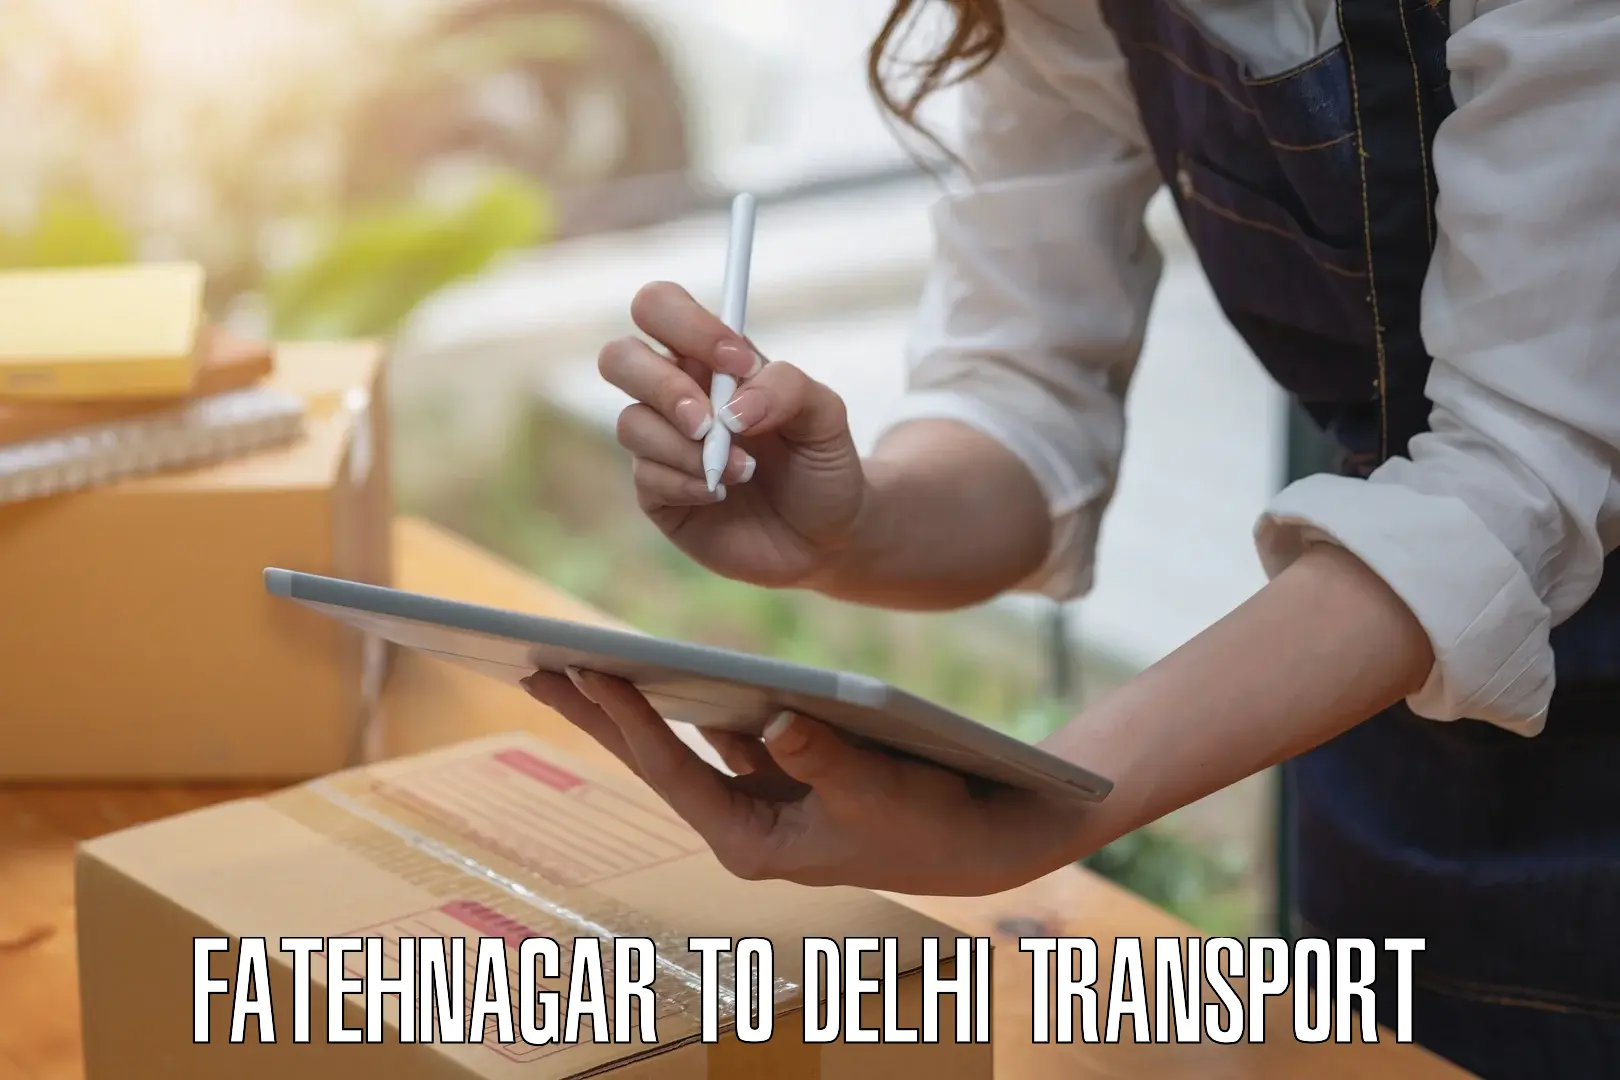 Road transport services Fatehnagar to Jawaharlal Nehru University New Delhi